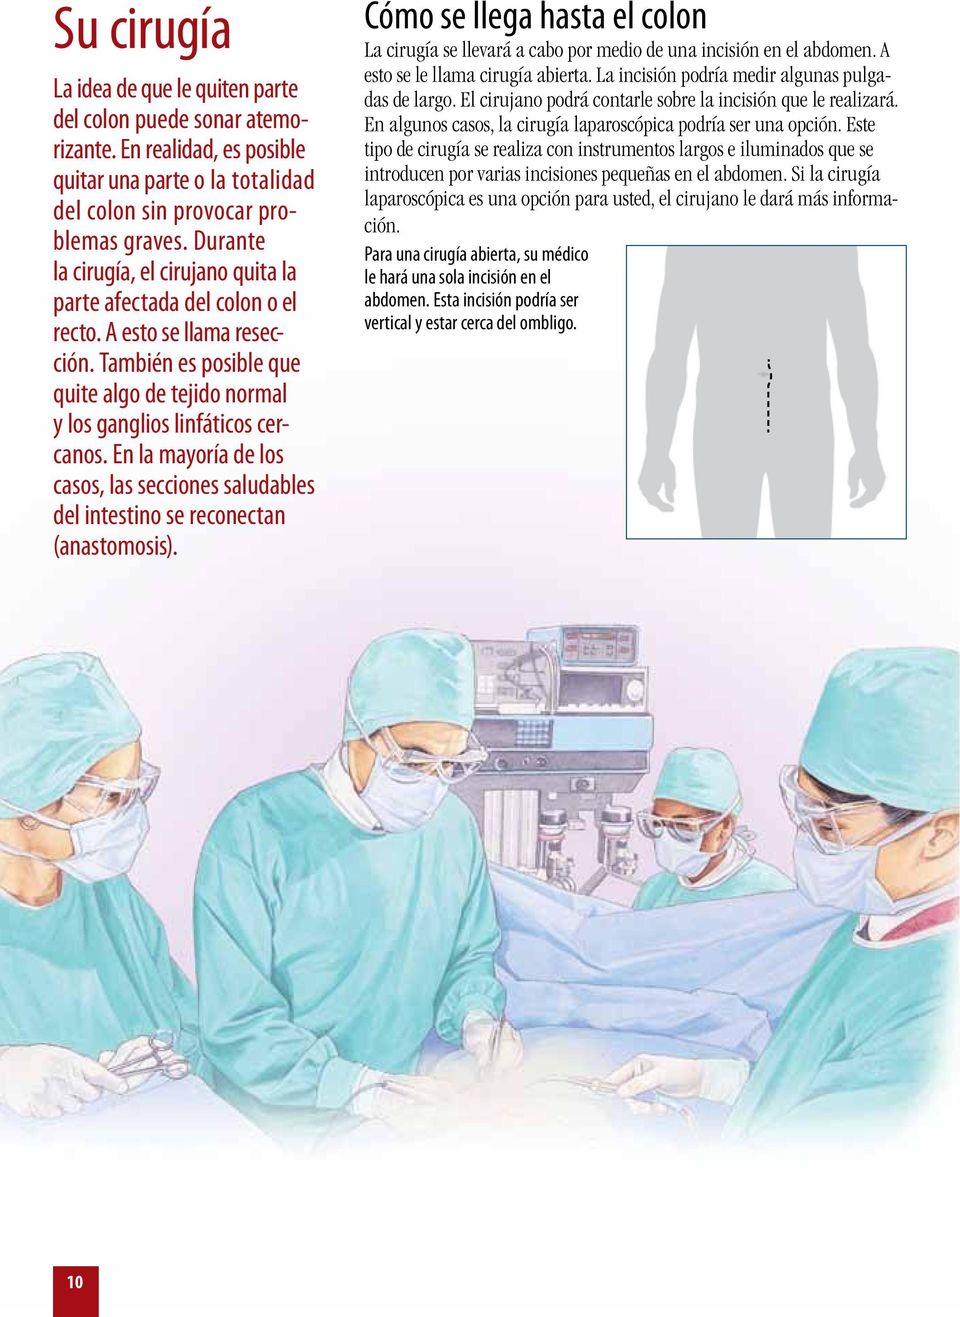 En la mayoría de los casos, las secciones saludables del intestino se reconectan (anastomosis). Cómo se llega hasta el colon La cirugía se llevará a cabo por medio de una incisión en el abdomen.